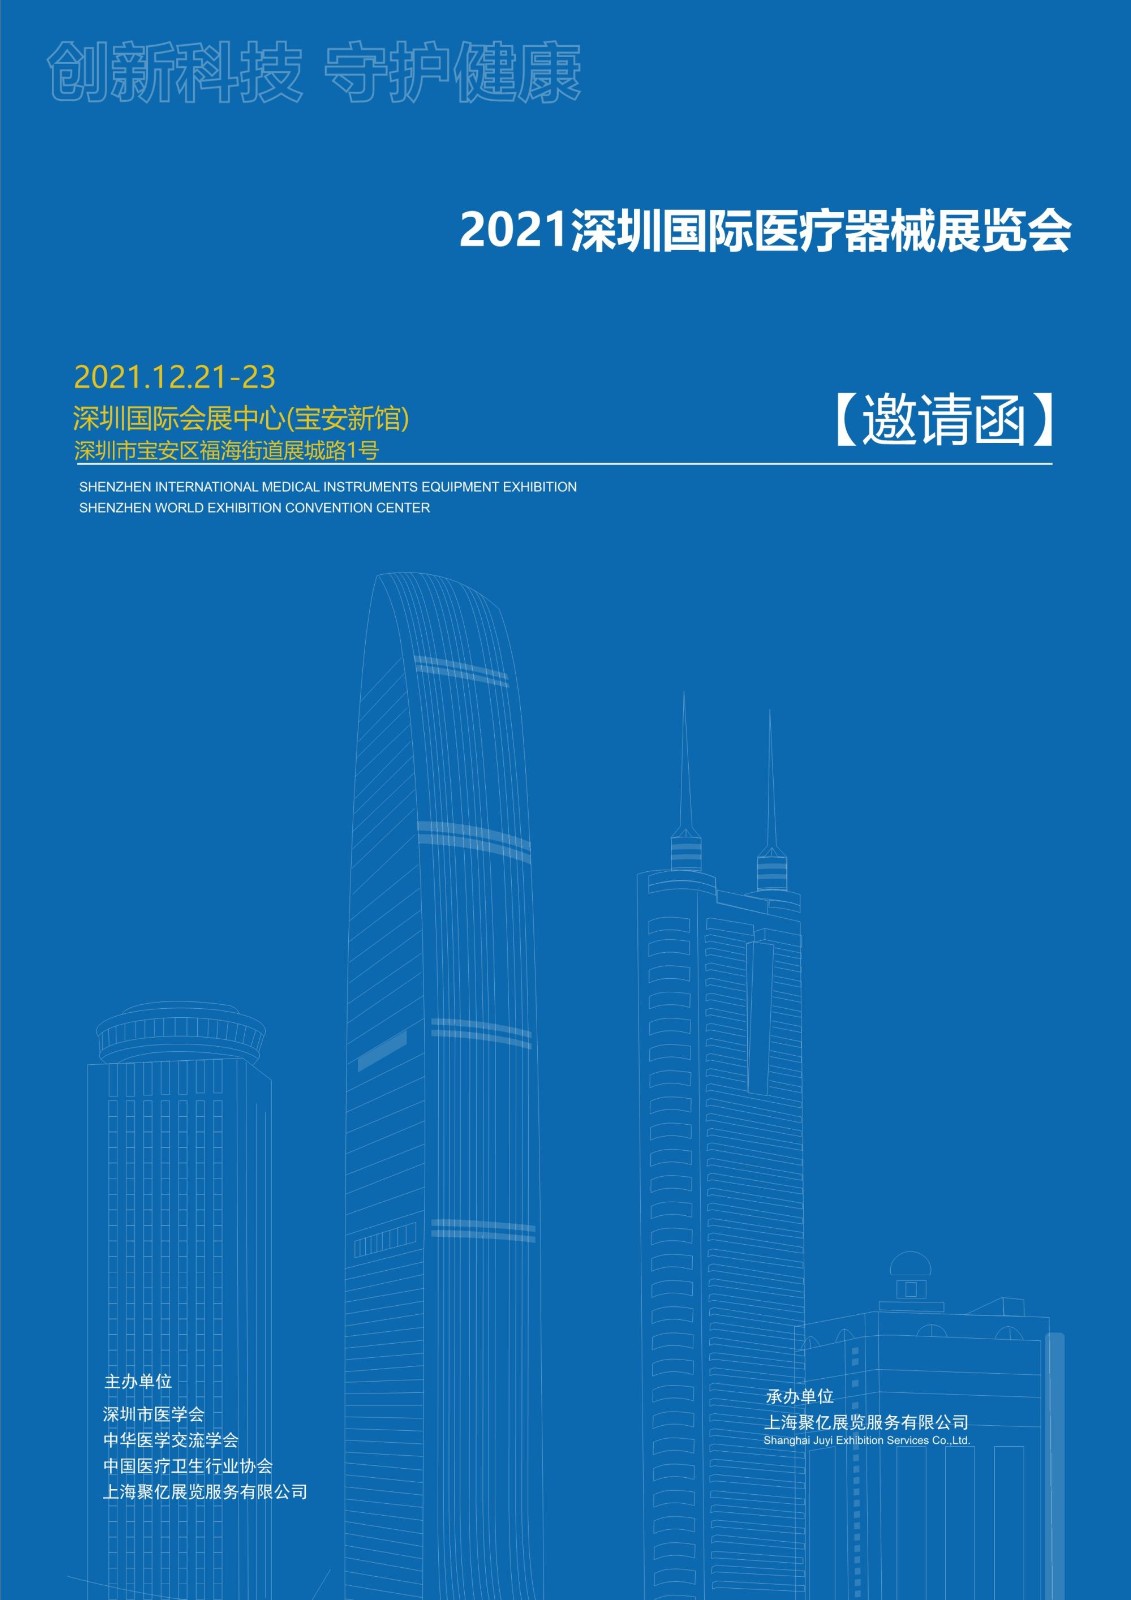 深圳医博会将于12月18-20日深圳国际会展中心盛大开幕